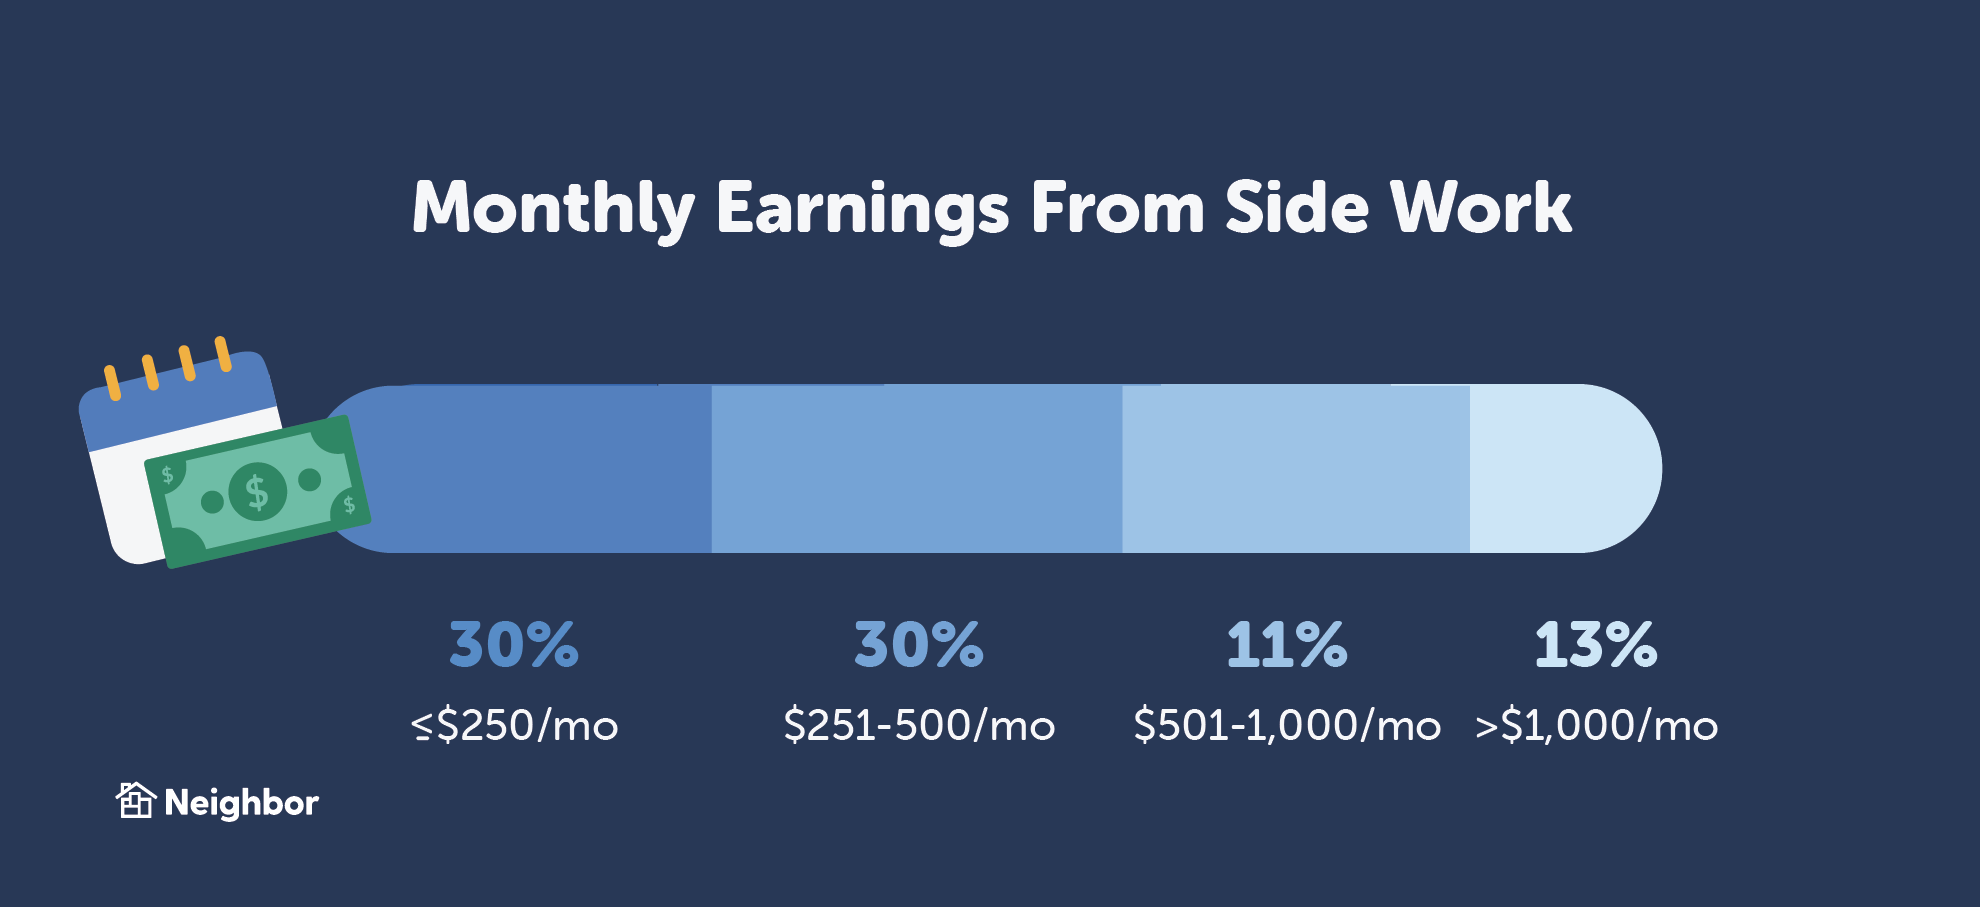 Graphique montrant que 2 Américains sur 3 avec une version de travail secondaire gagnent jusqu'à 500 $ par mois.